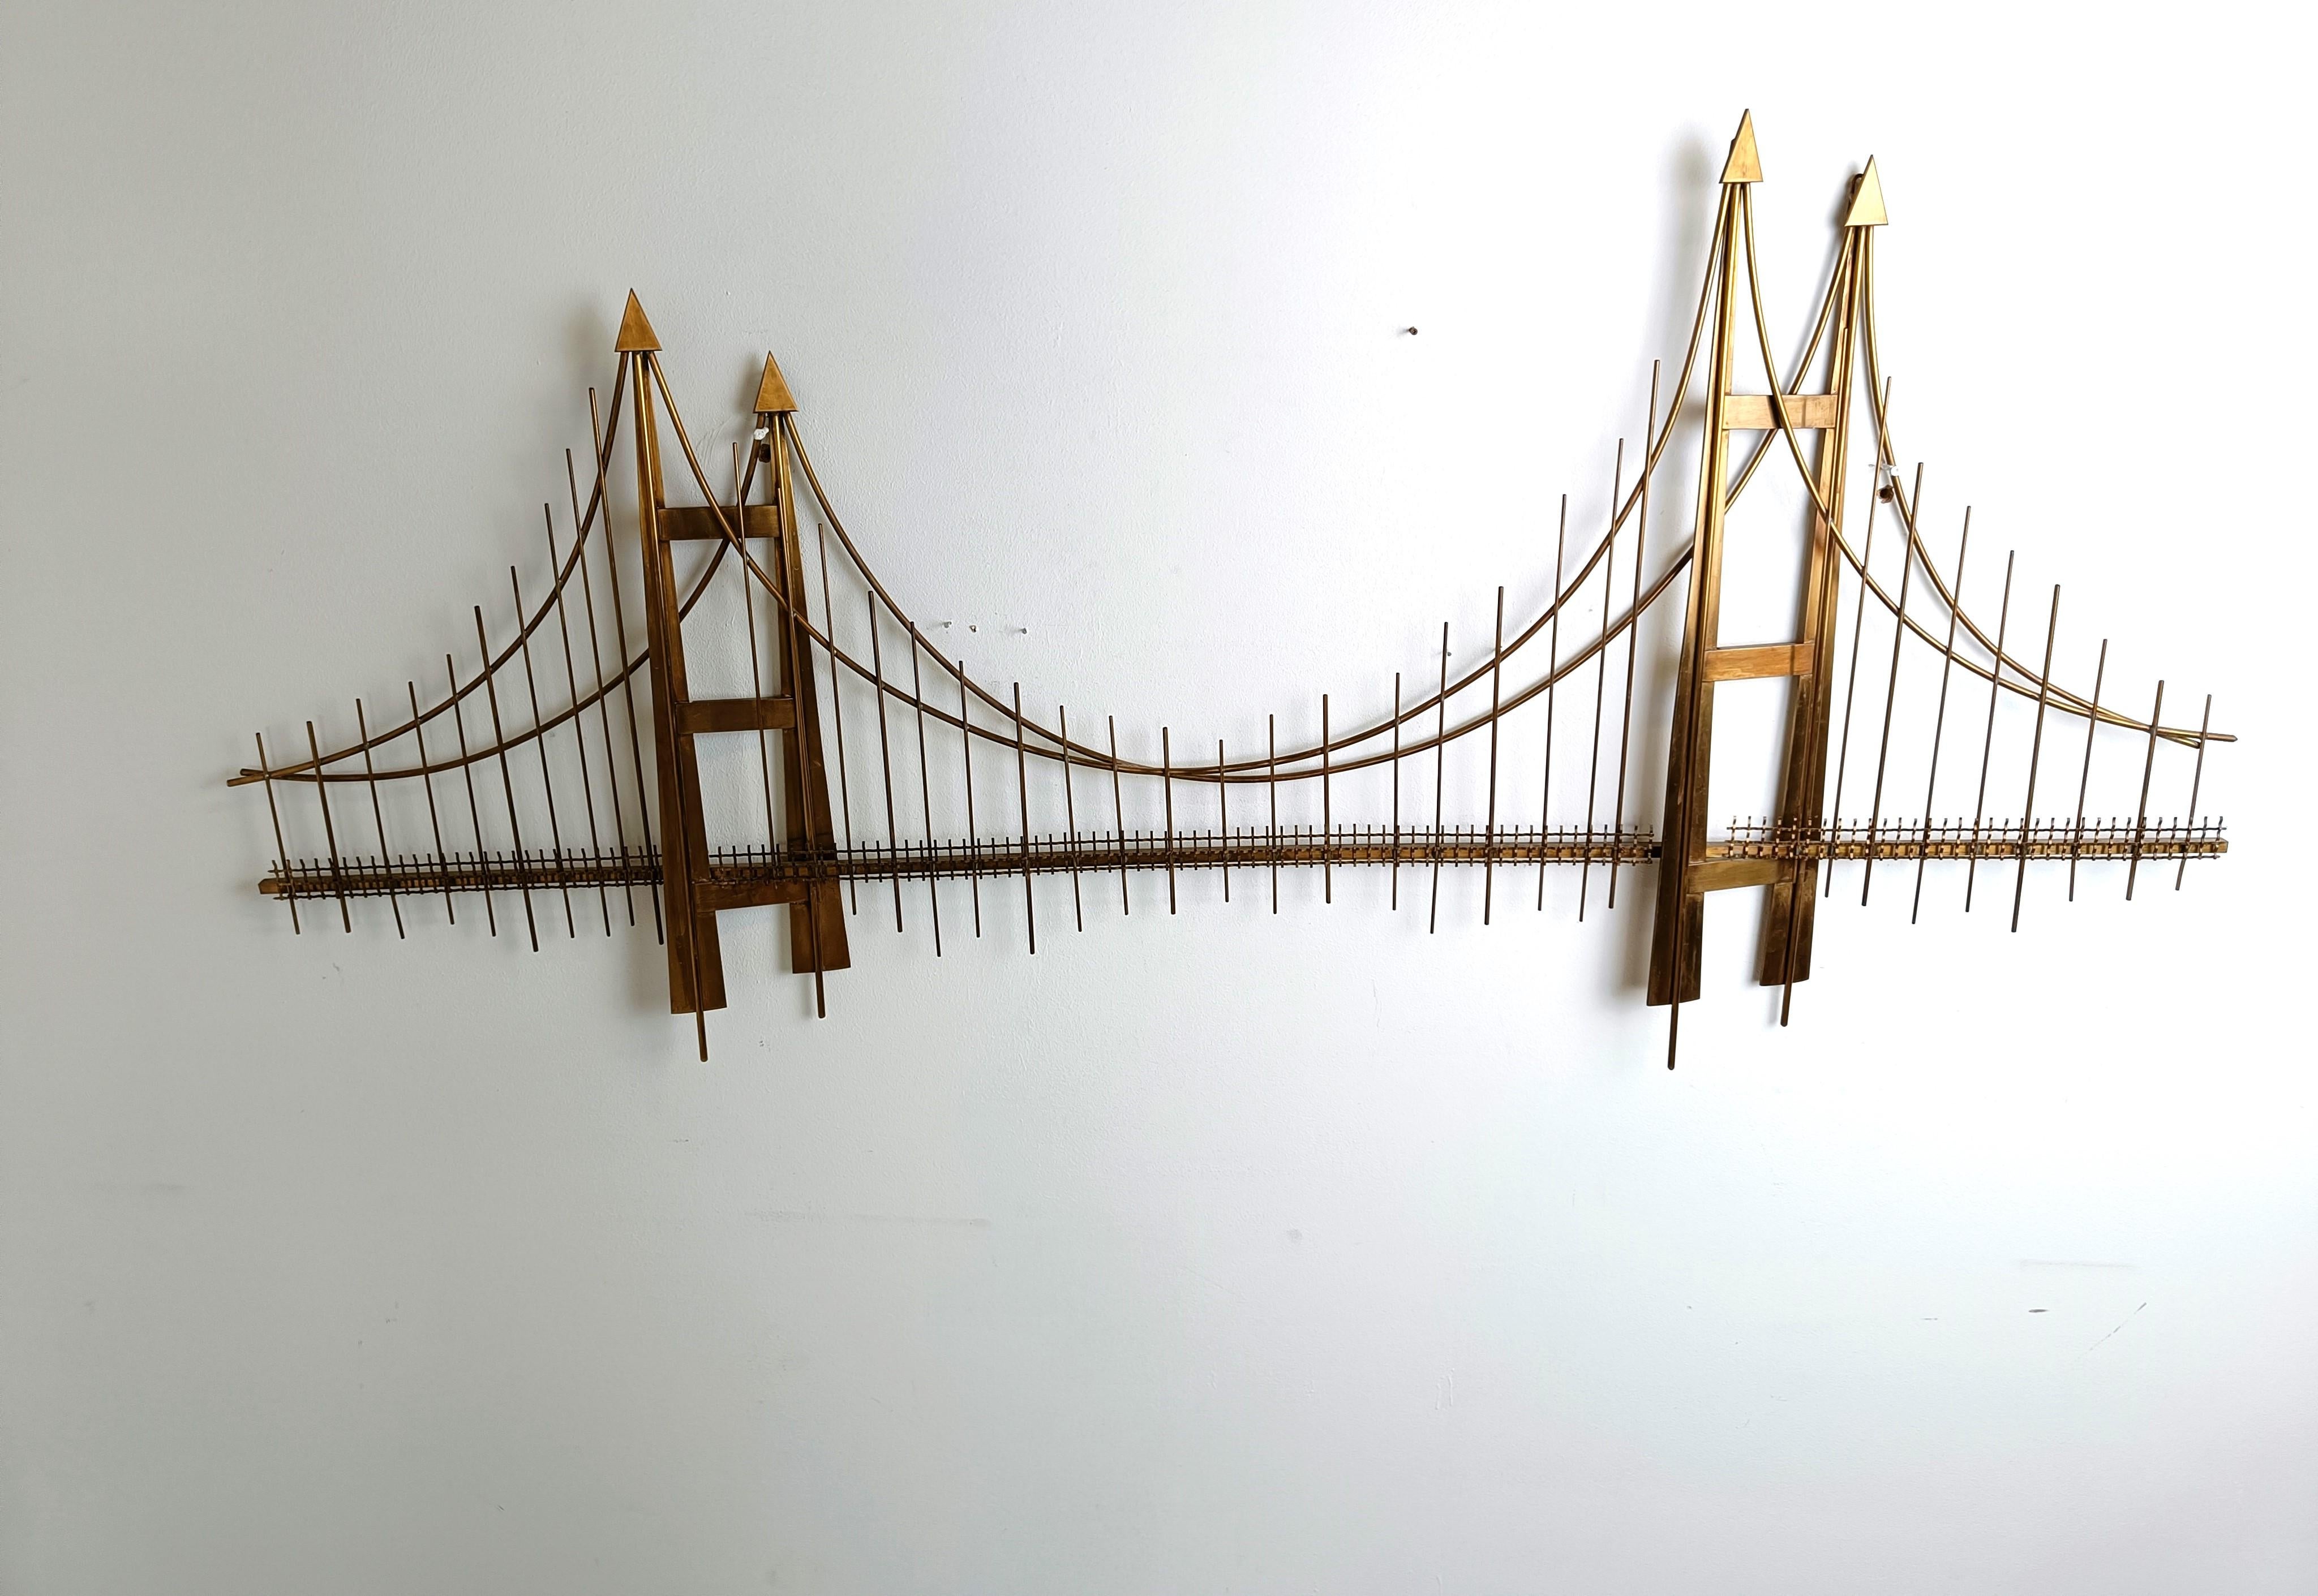 Impressionnante sculpture murale en cuivre représentant le pont de la Porte Dorée, à la manière de Curtis Jeré.

La sculpture est conçue pour créer un effet 3D du pont.

bonne condition

Années 1970 - Belgique

Dimensions :
Largeur : 160 cm
Hauteur